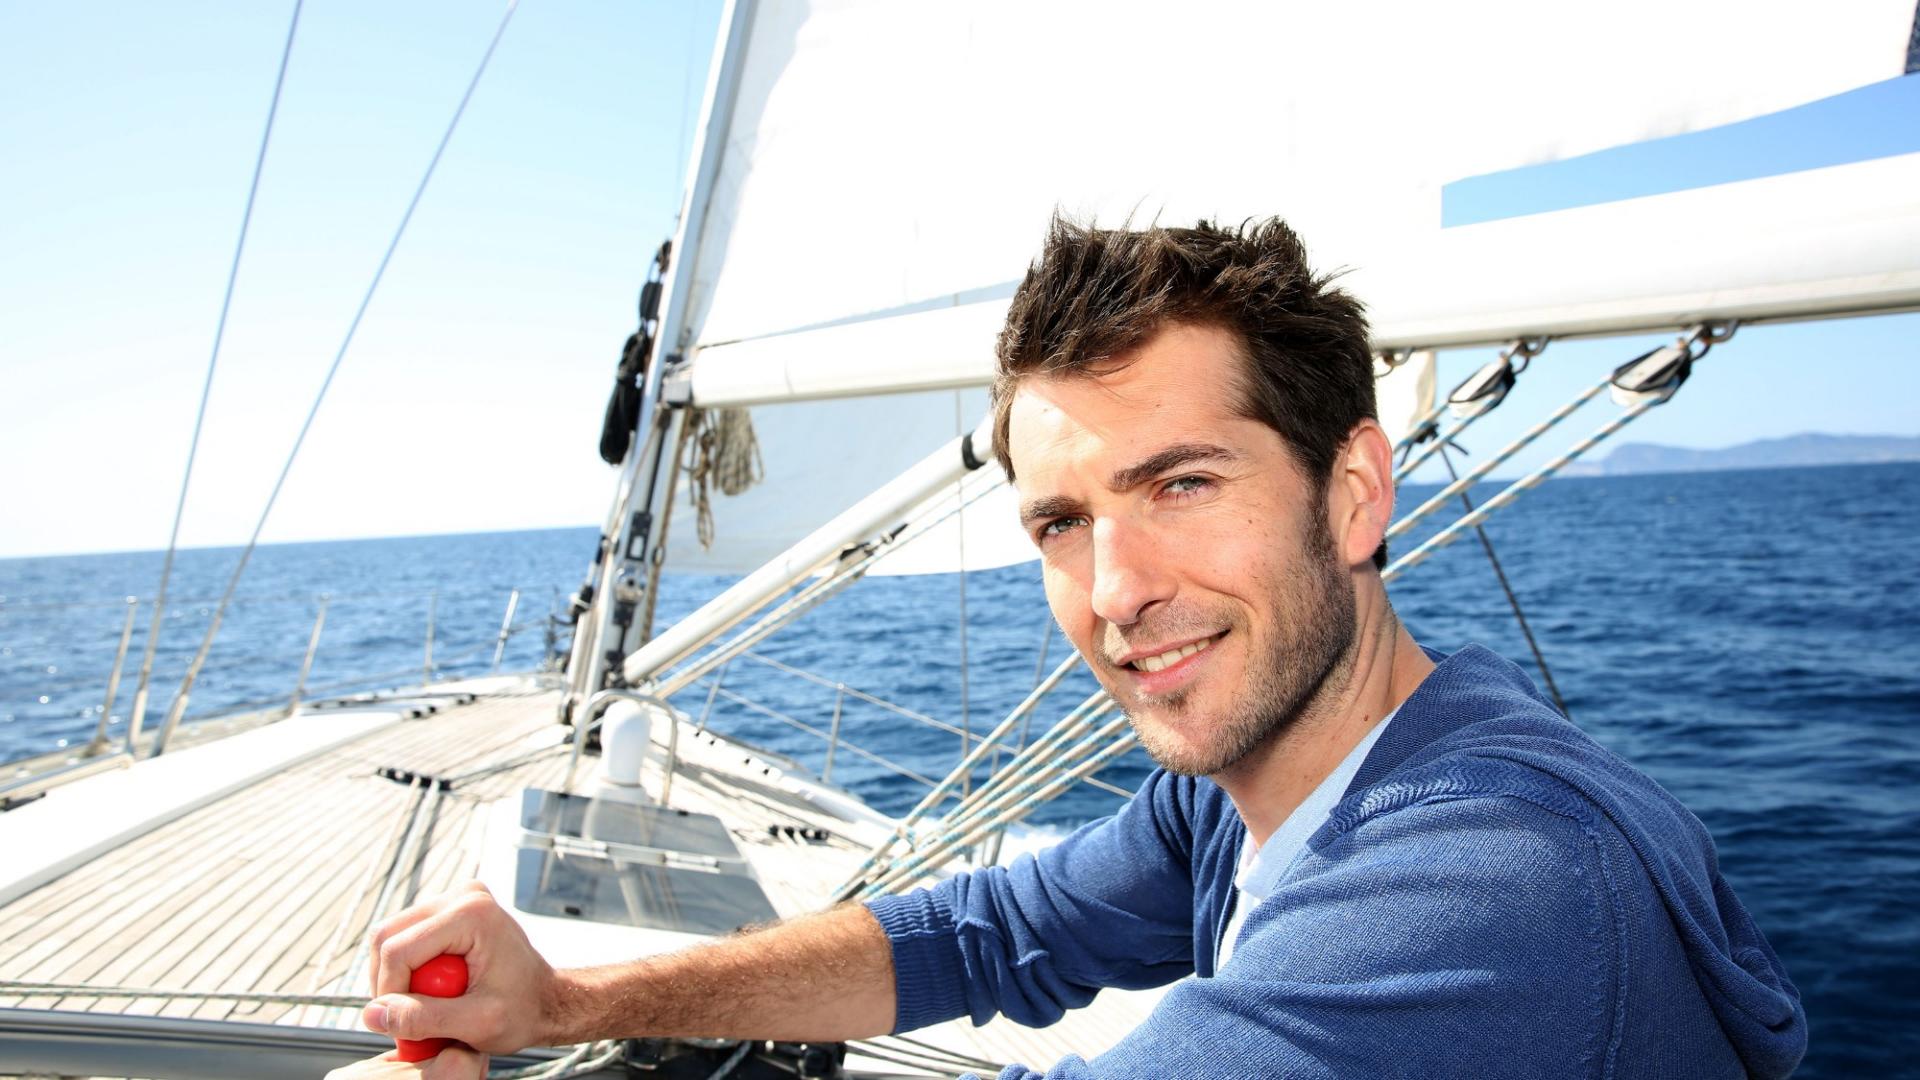 Produktbild Wassersportversicherung - Ein Mann auf einem Segelboot